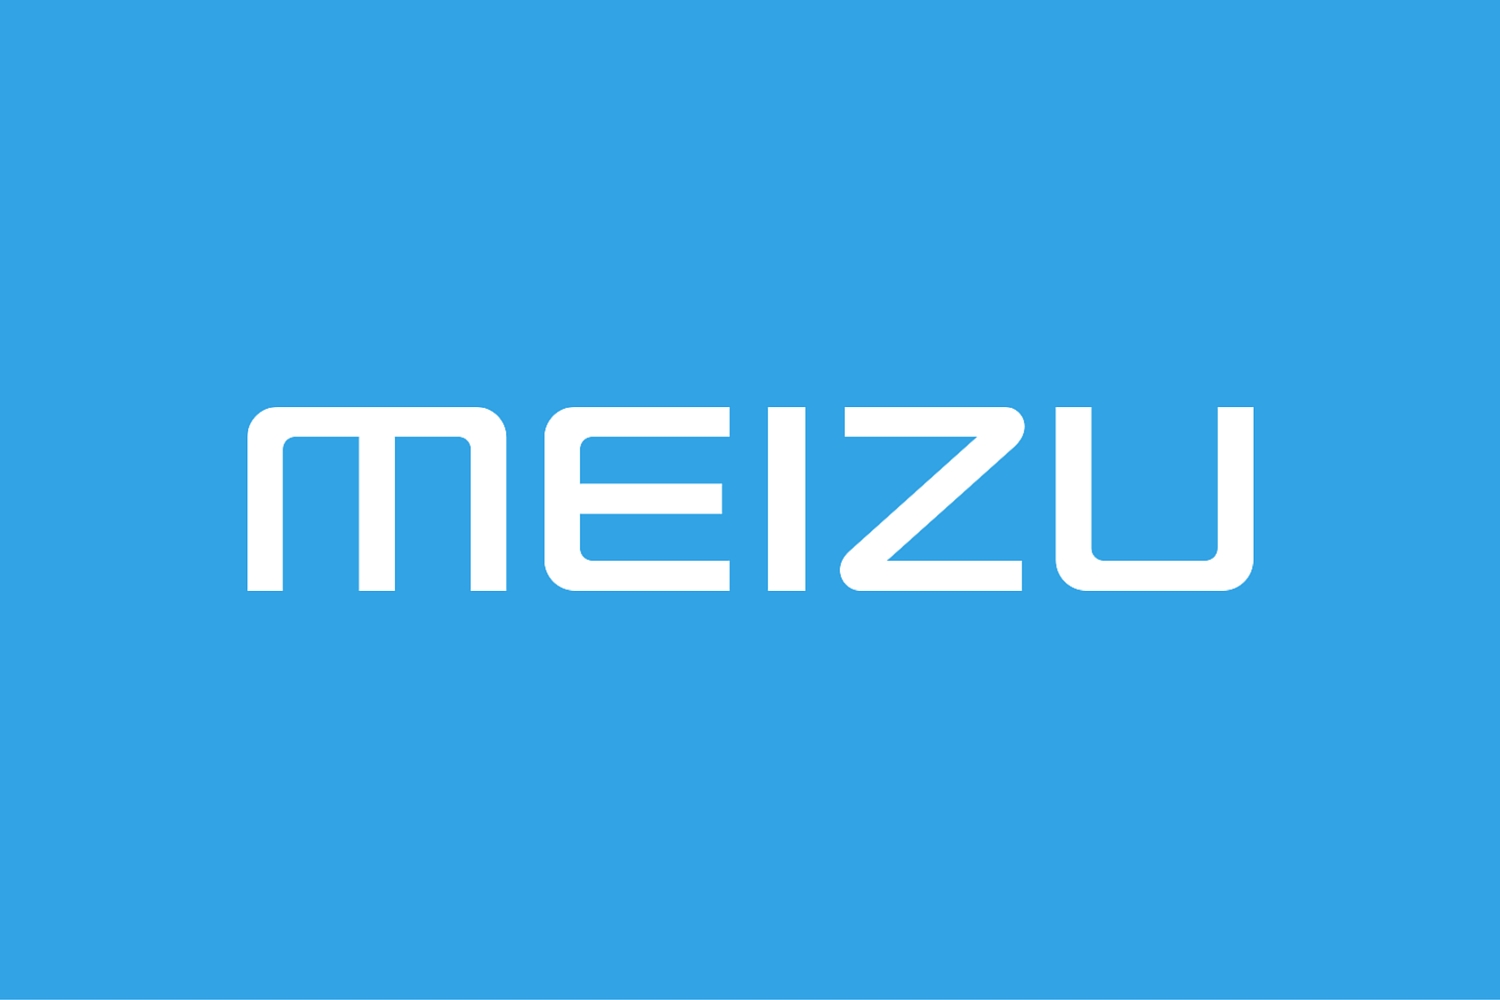 Meizu ogłasza nową markę i podaje nazwy pierwszych nowych produktów